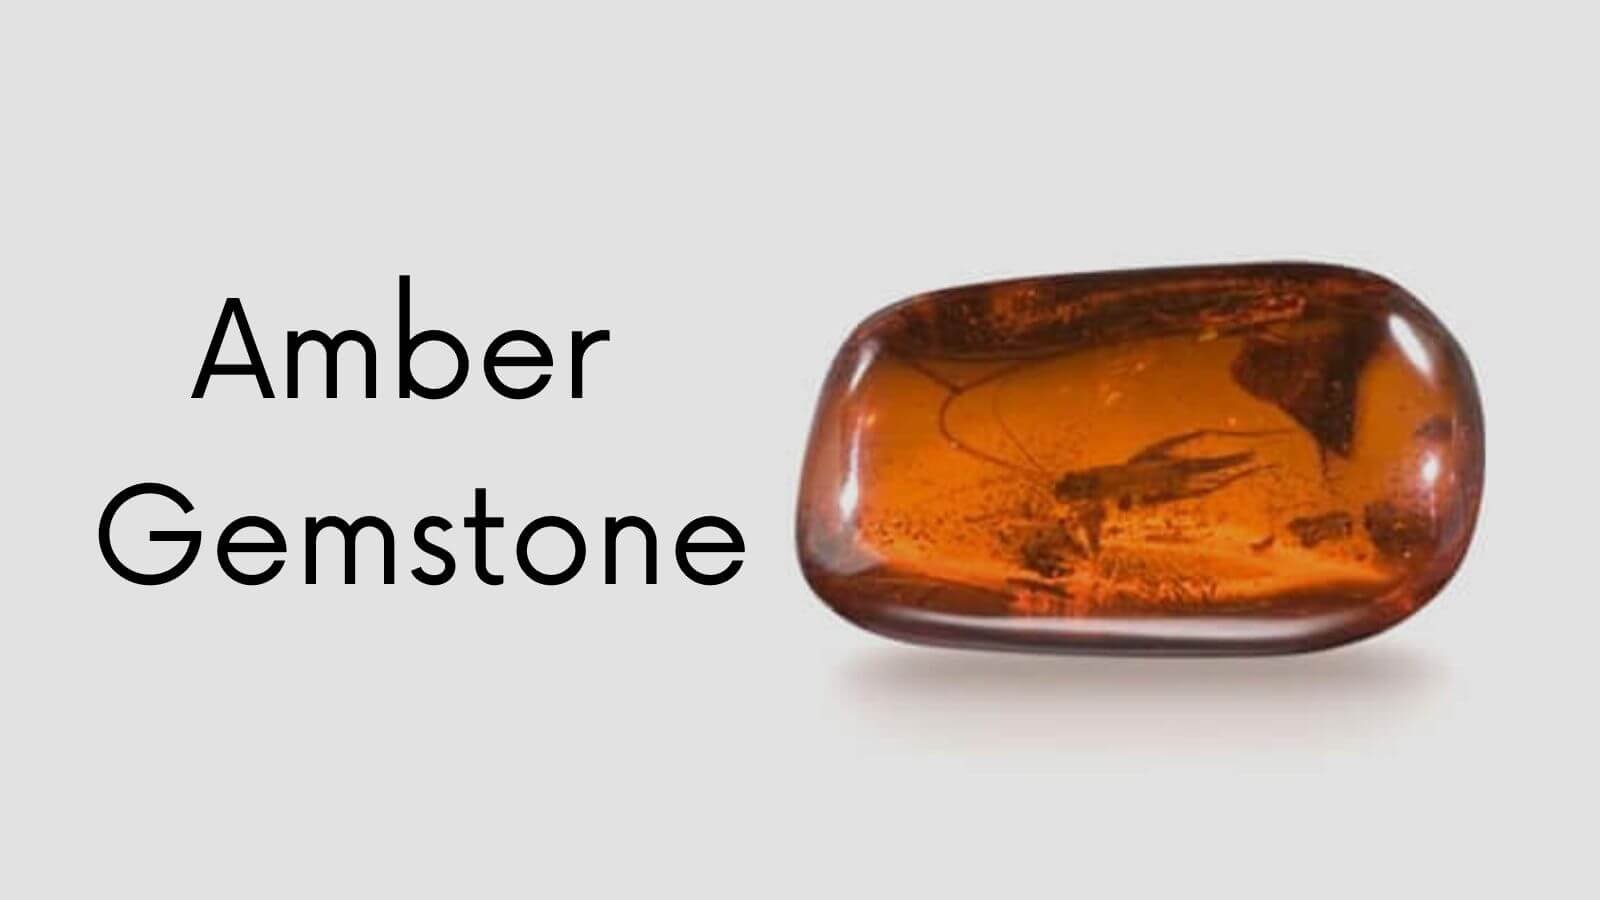 Amber Gemstone: Antique gemstone